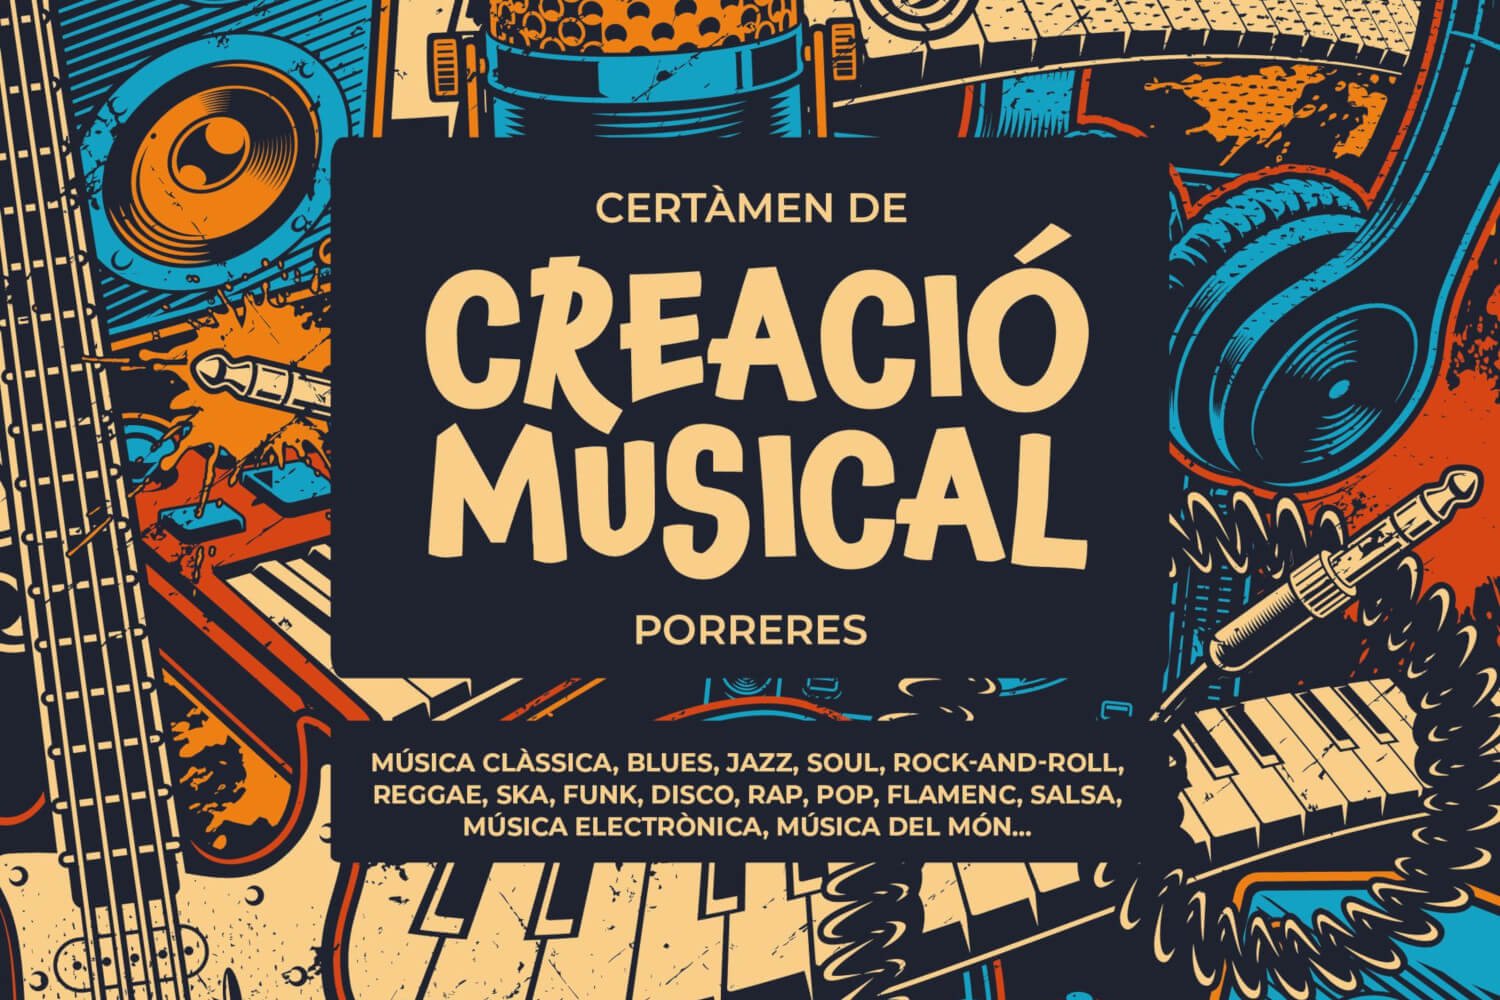 Certamen creació musical Porreres 2022 - Mallorca Music Magazine